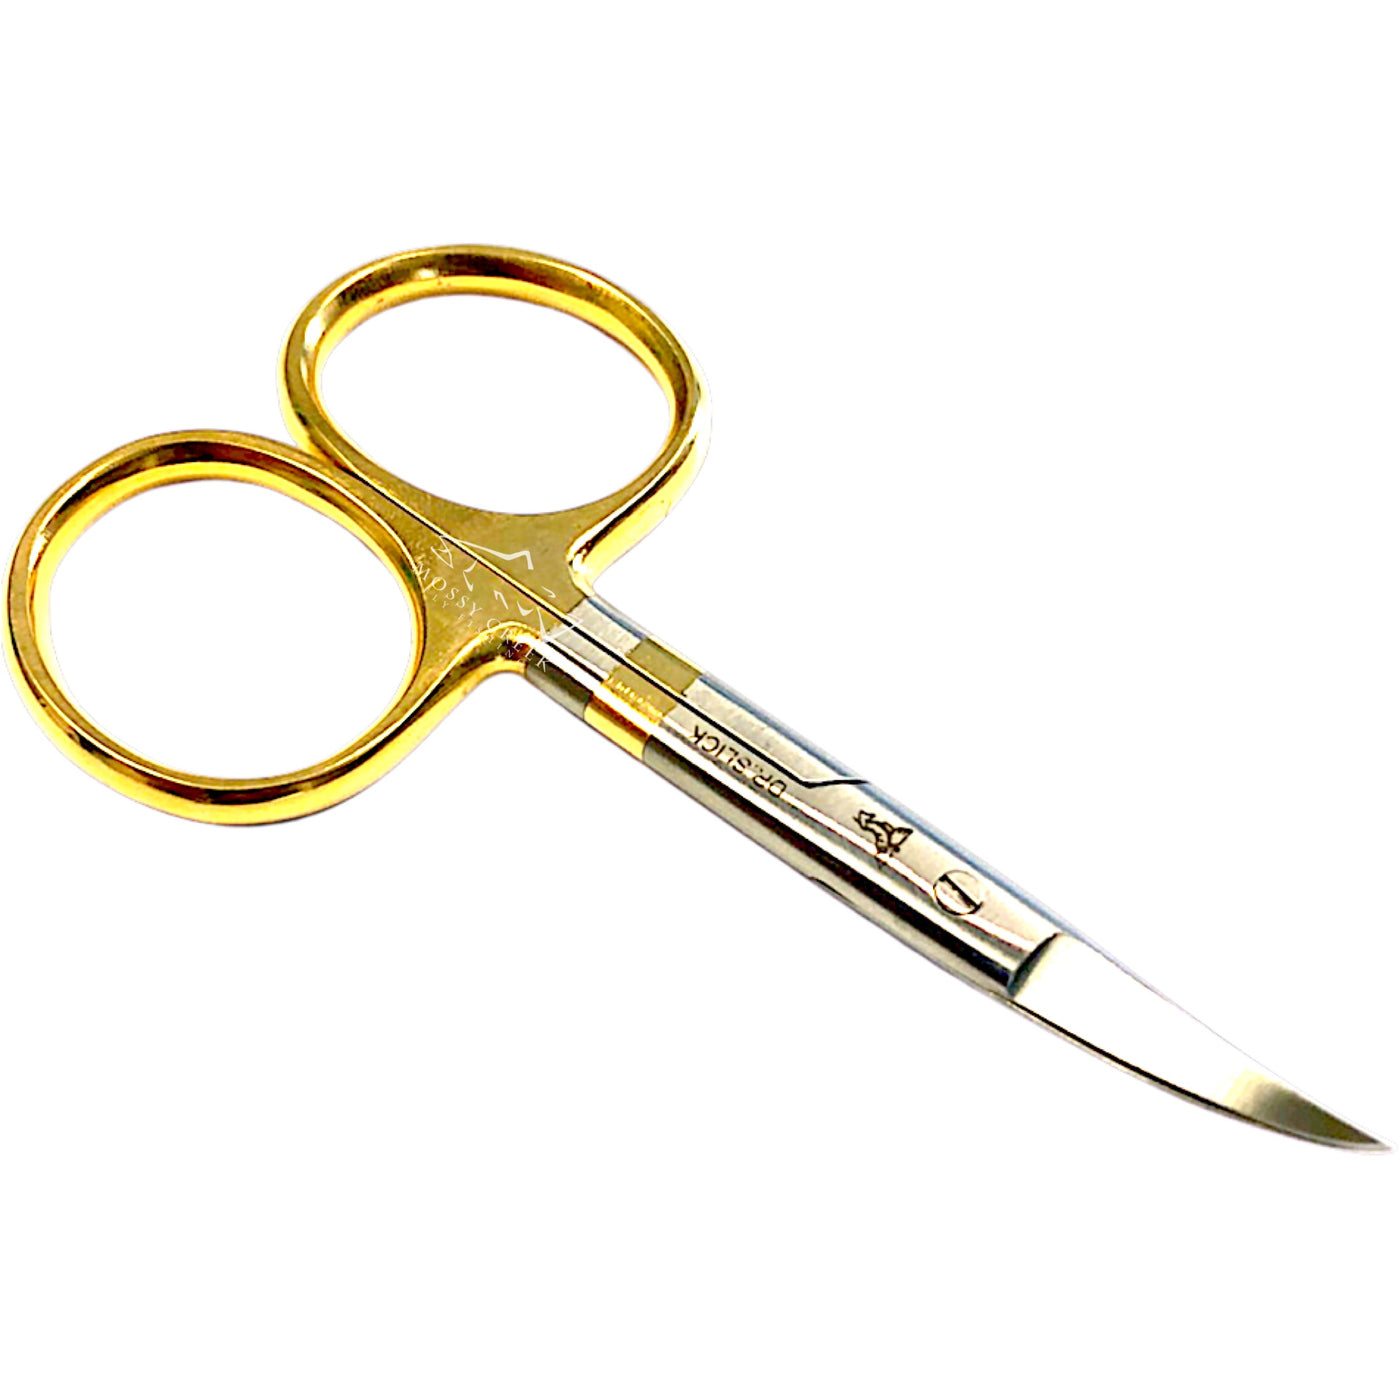 Large All Purpose Scissors